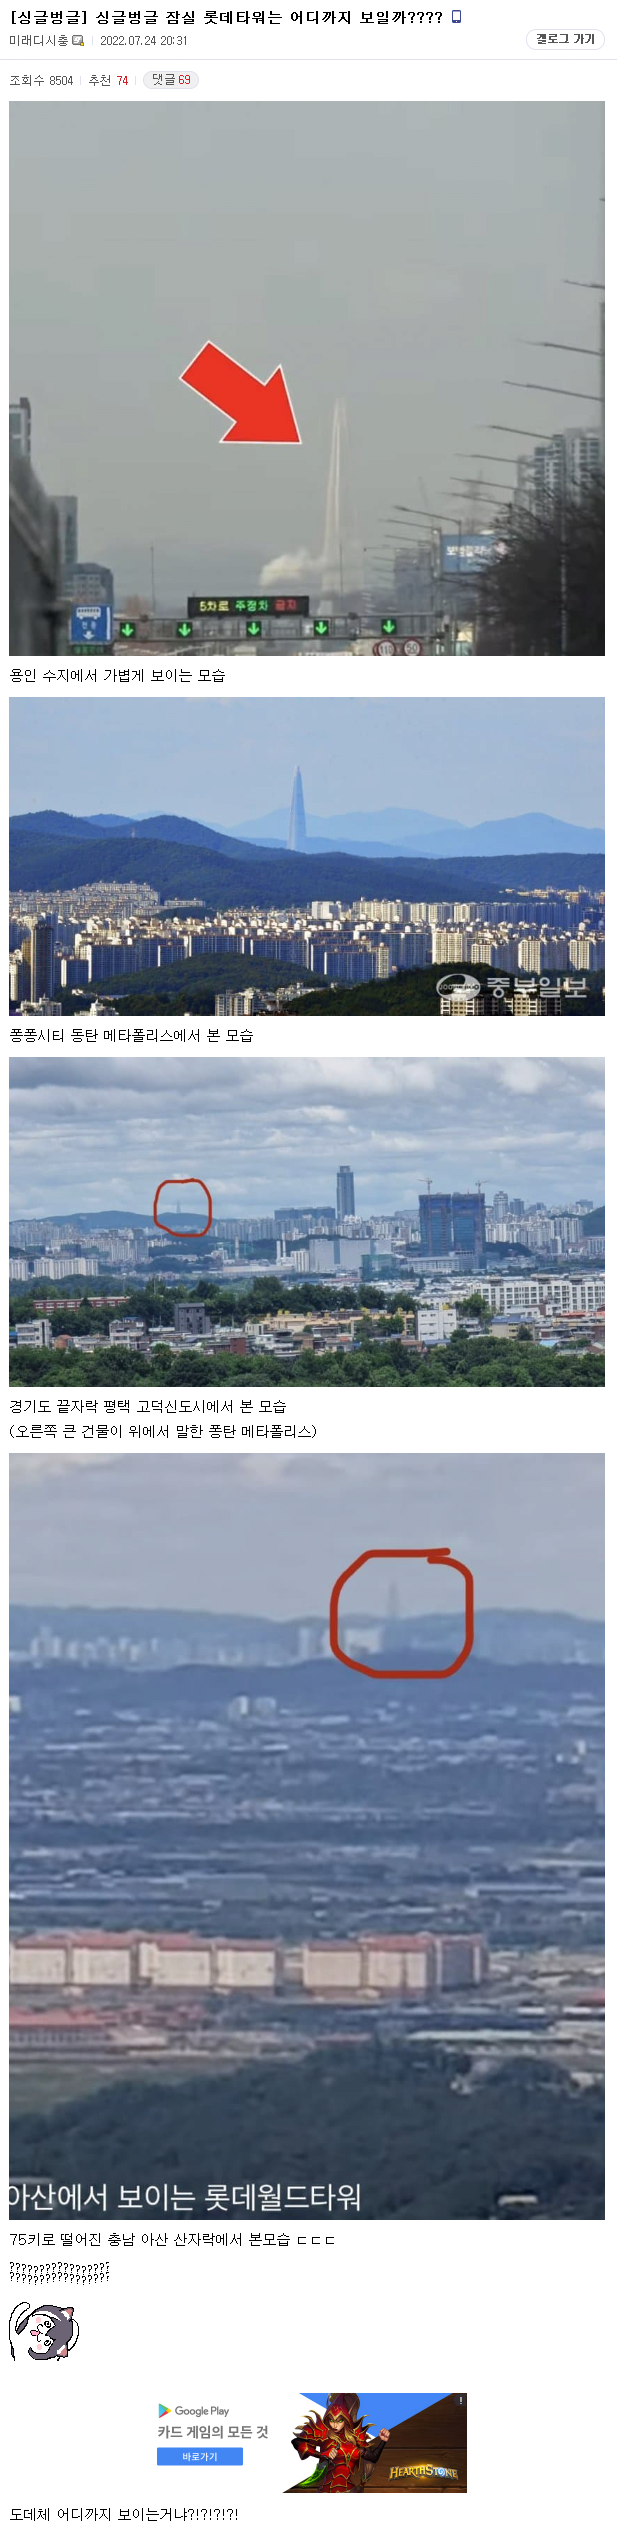 서울 전역을 감시중인 한국의 사우론.jpg